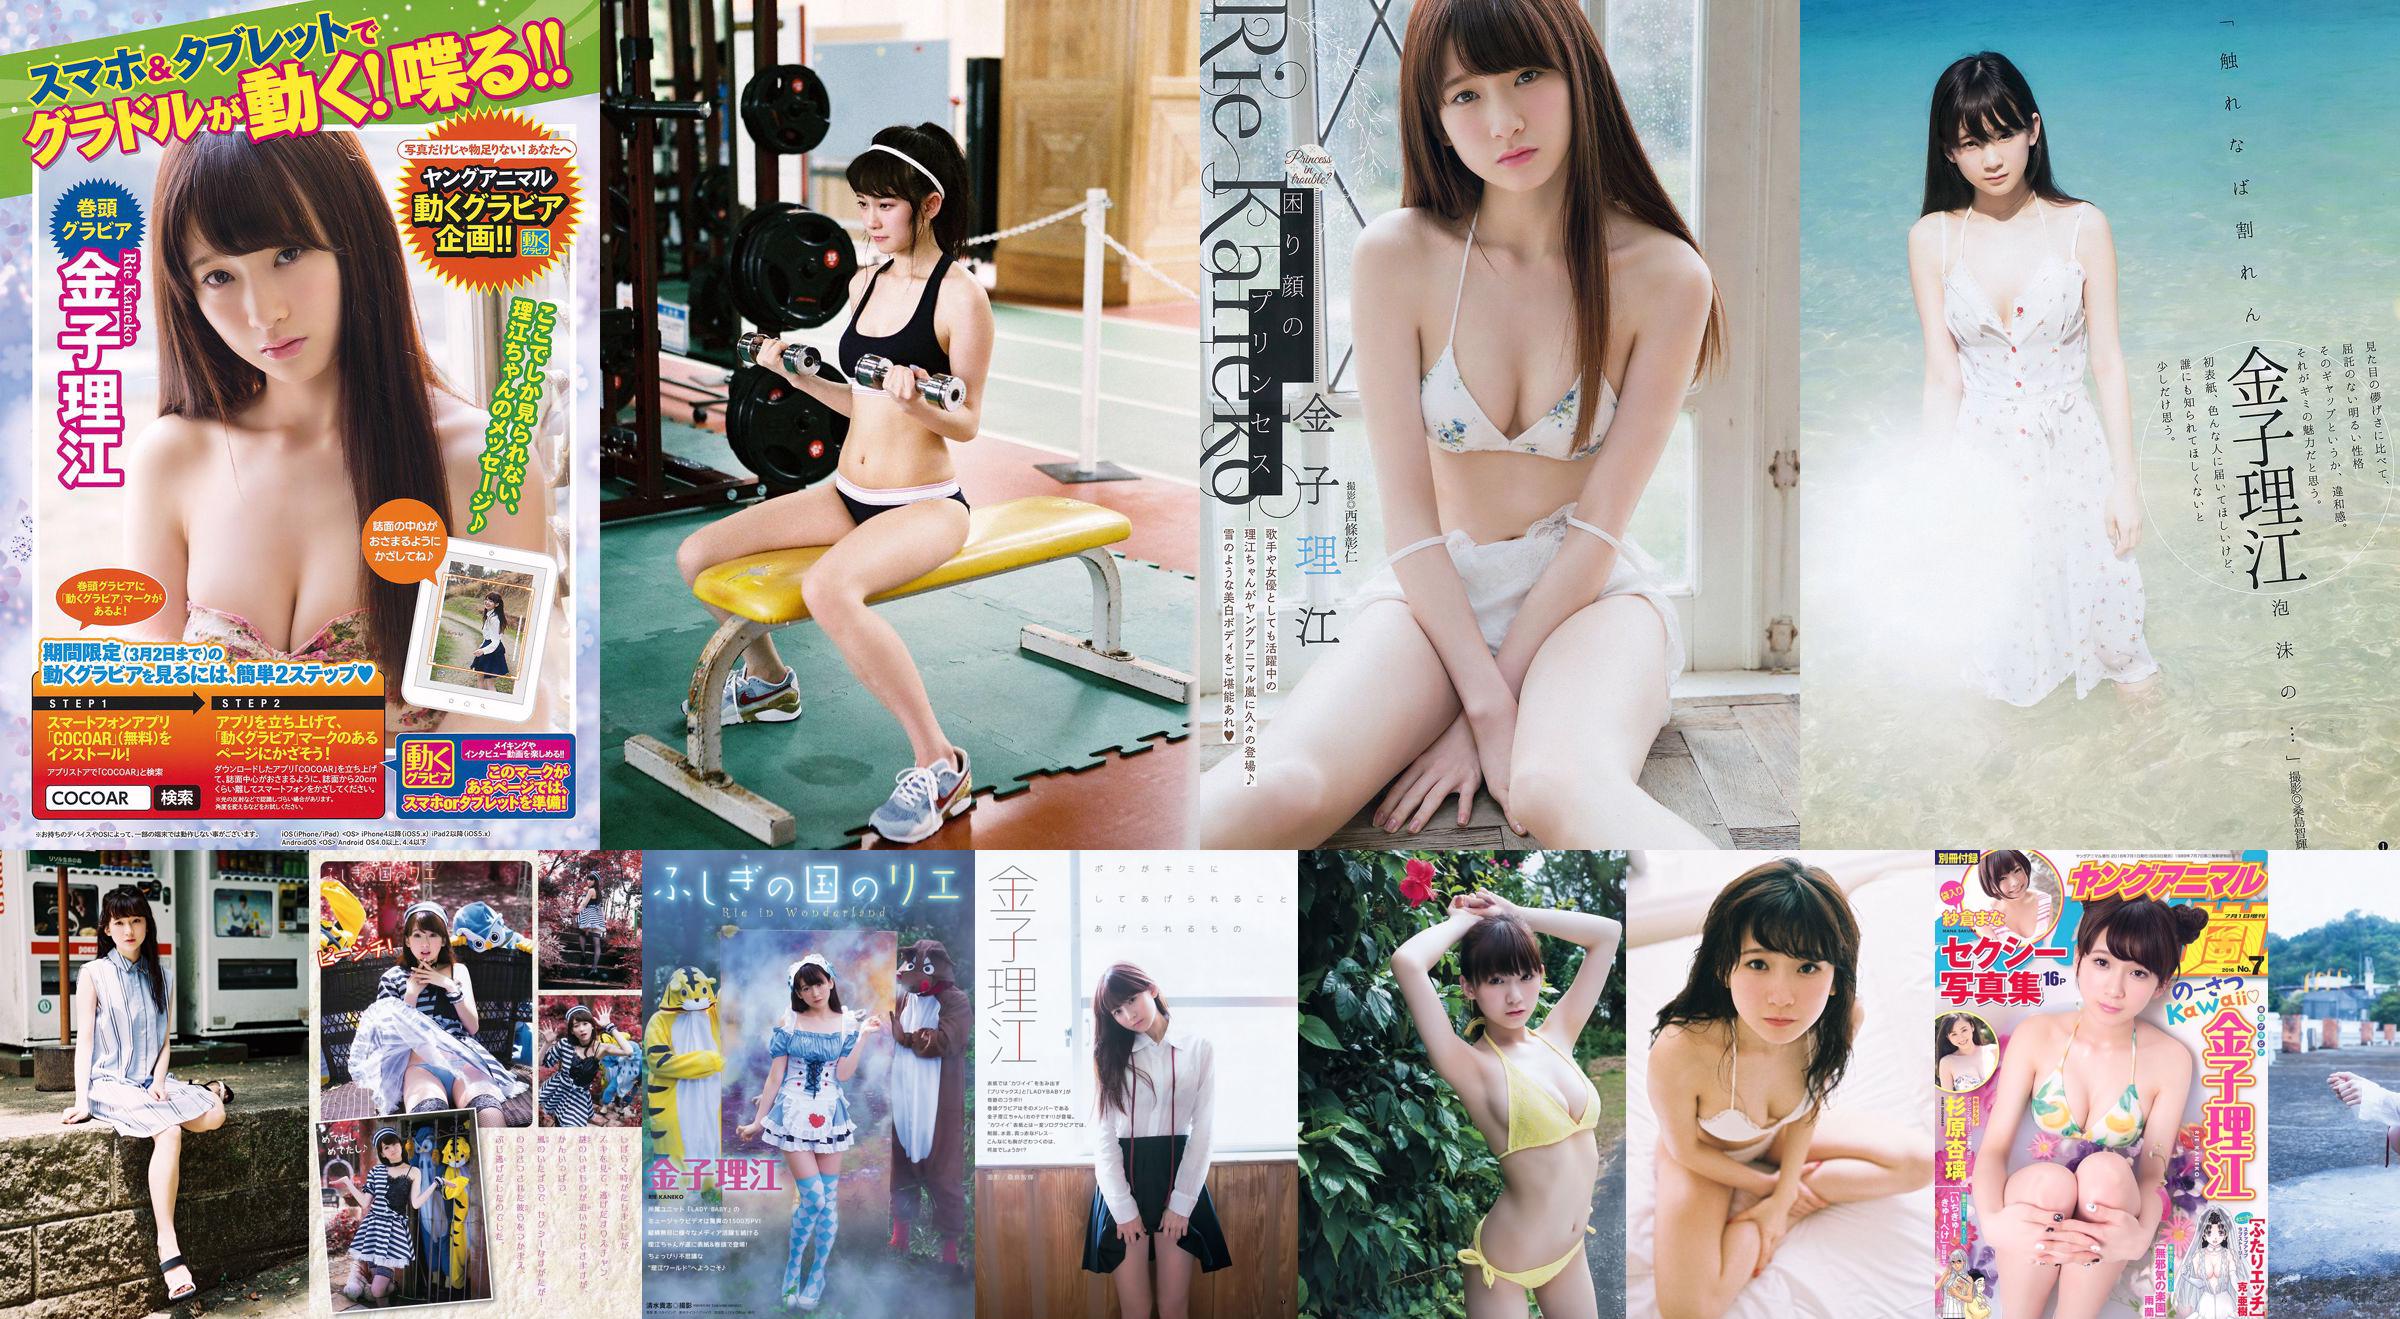 Rie Kaneko, Anri Sugihara, Sakura ま な [Young Animal Arashi Special Issue] No.07 2016 Photo Magazine No.9926b5 Página 2